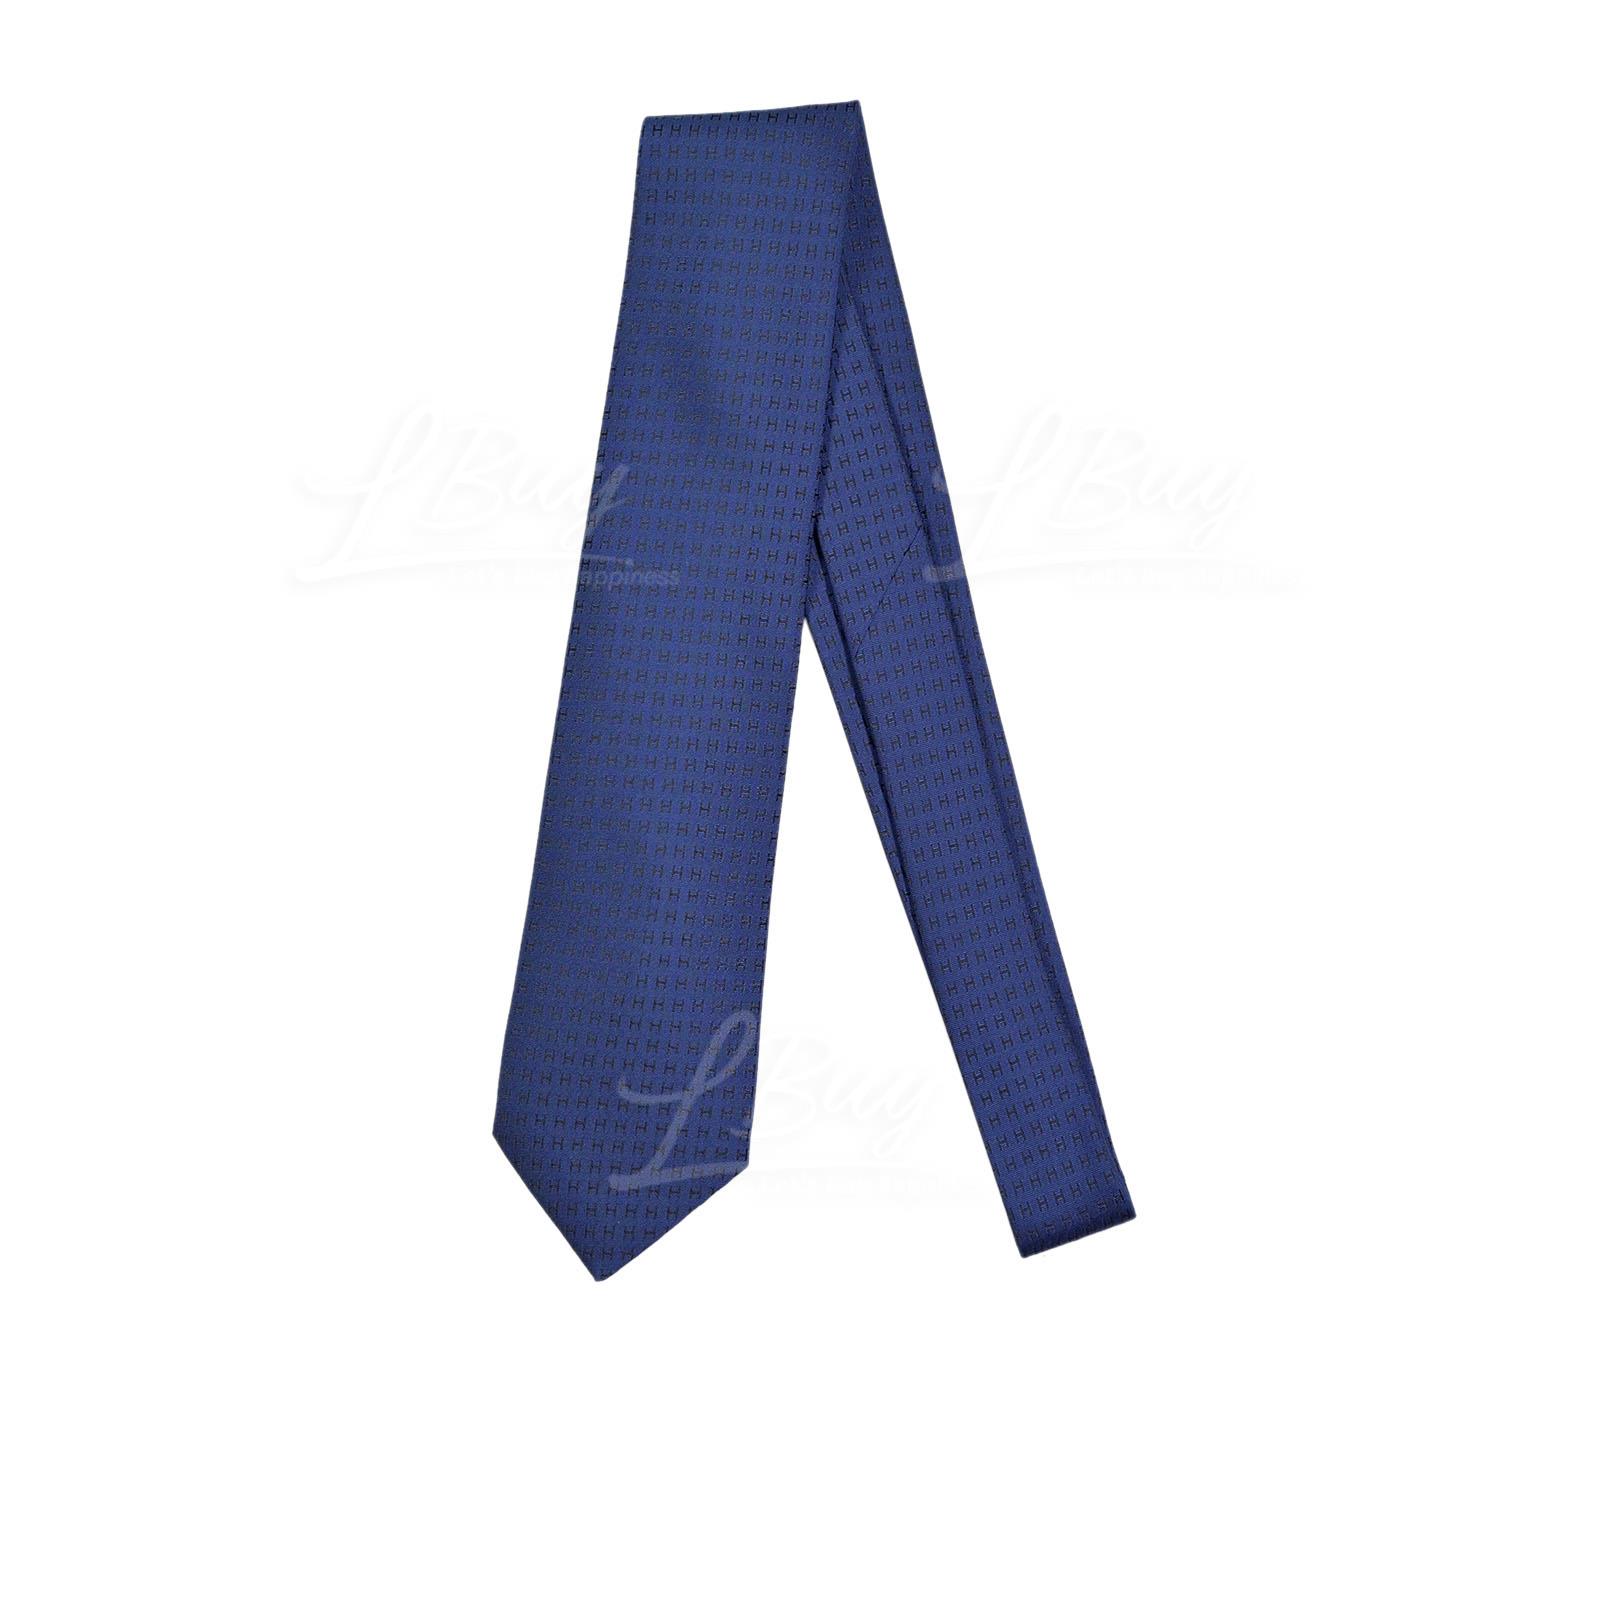 Hermes Faconnee H Bicolore Bleu Nuit Charbon Tie